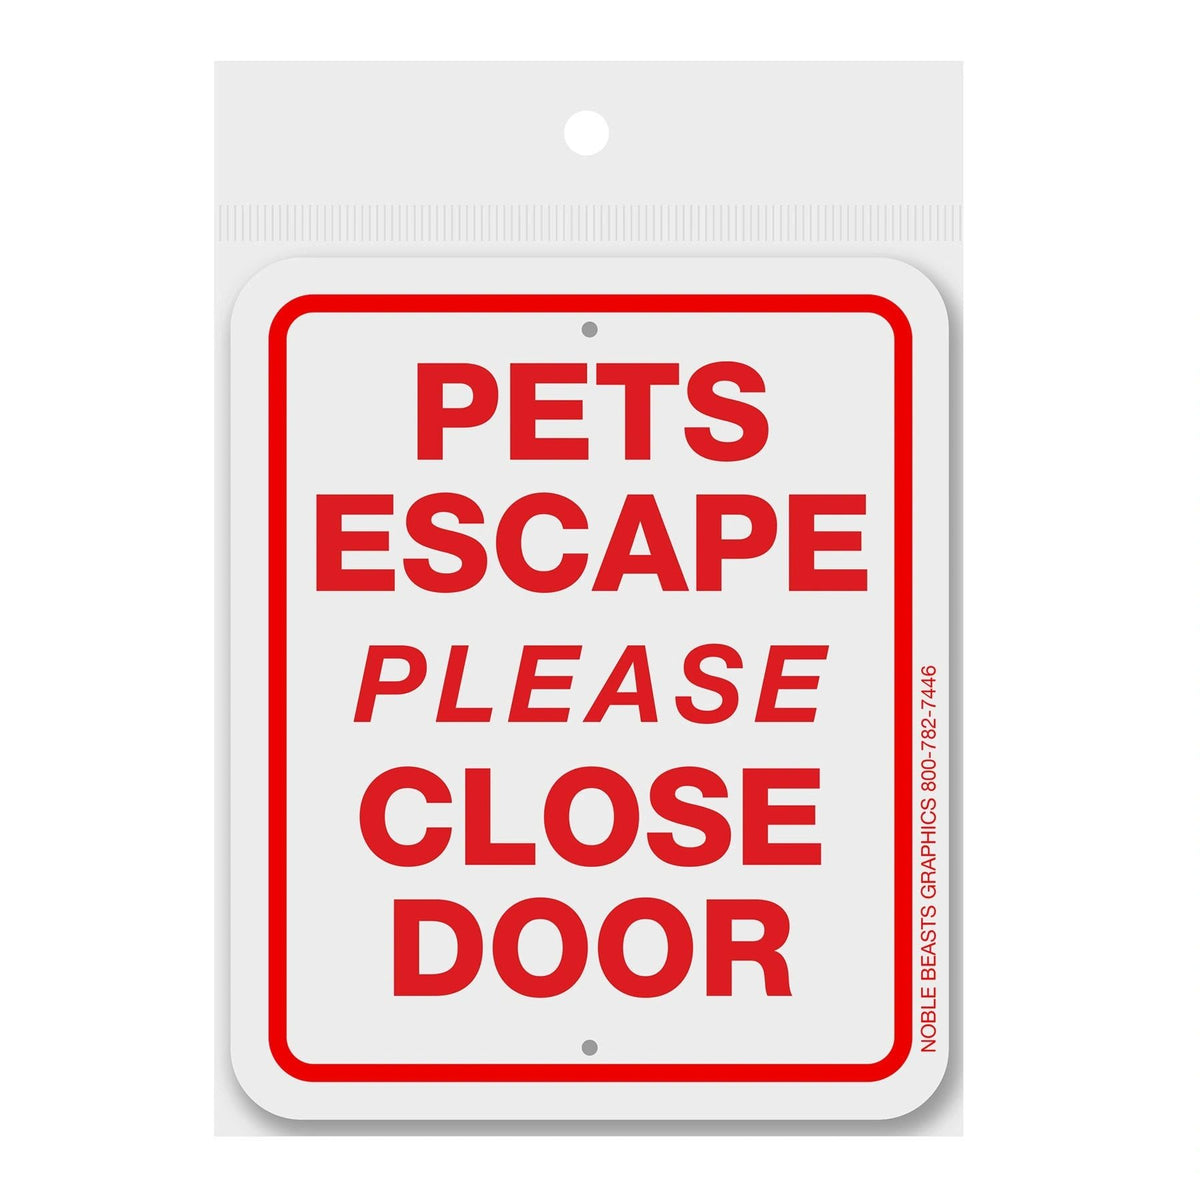 Pets Escape Please Close Door Sign Aluminum 5 in X 6 in #3643115